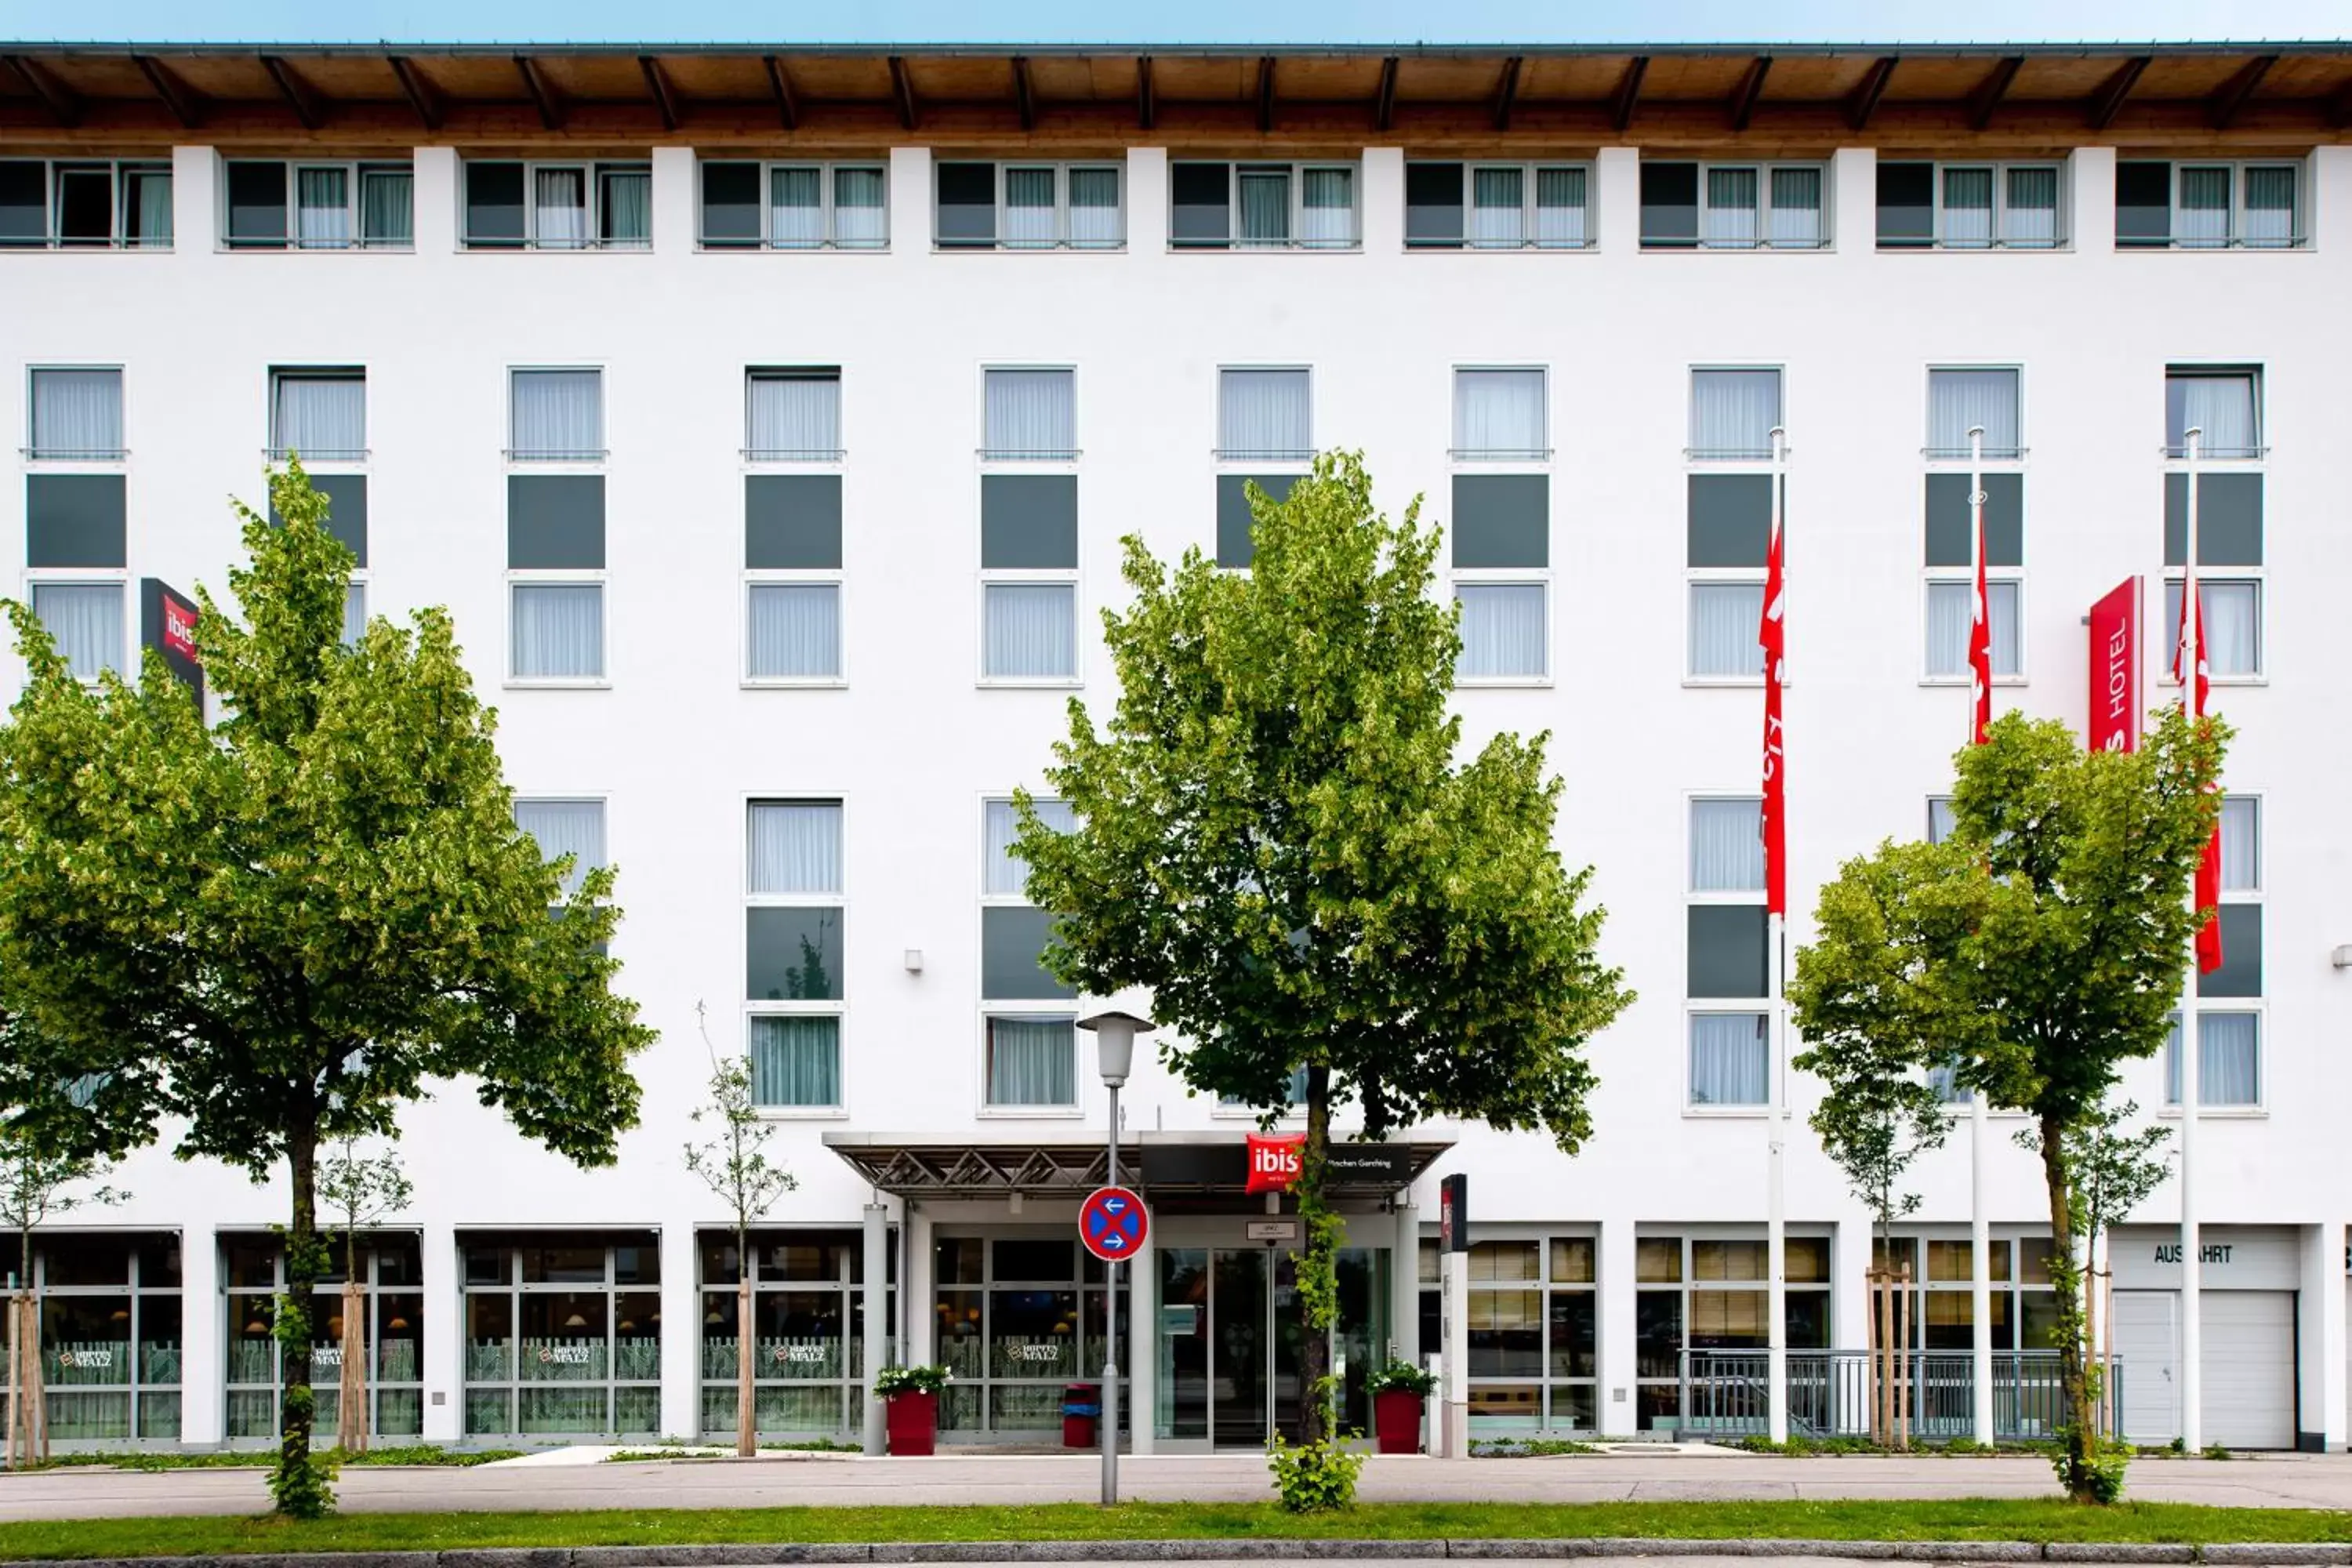 Facade/entrance, Property Building in ibis Hotel München Garching